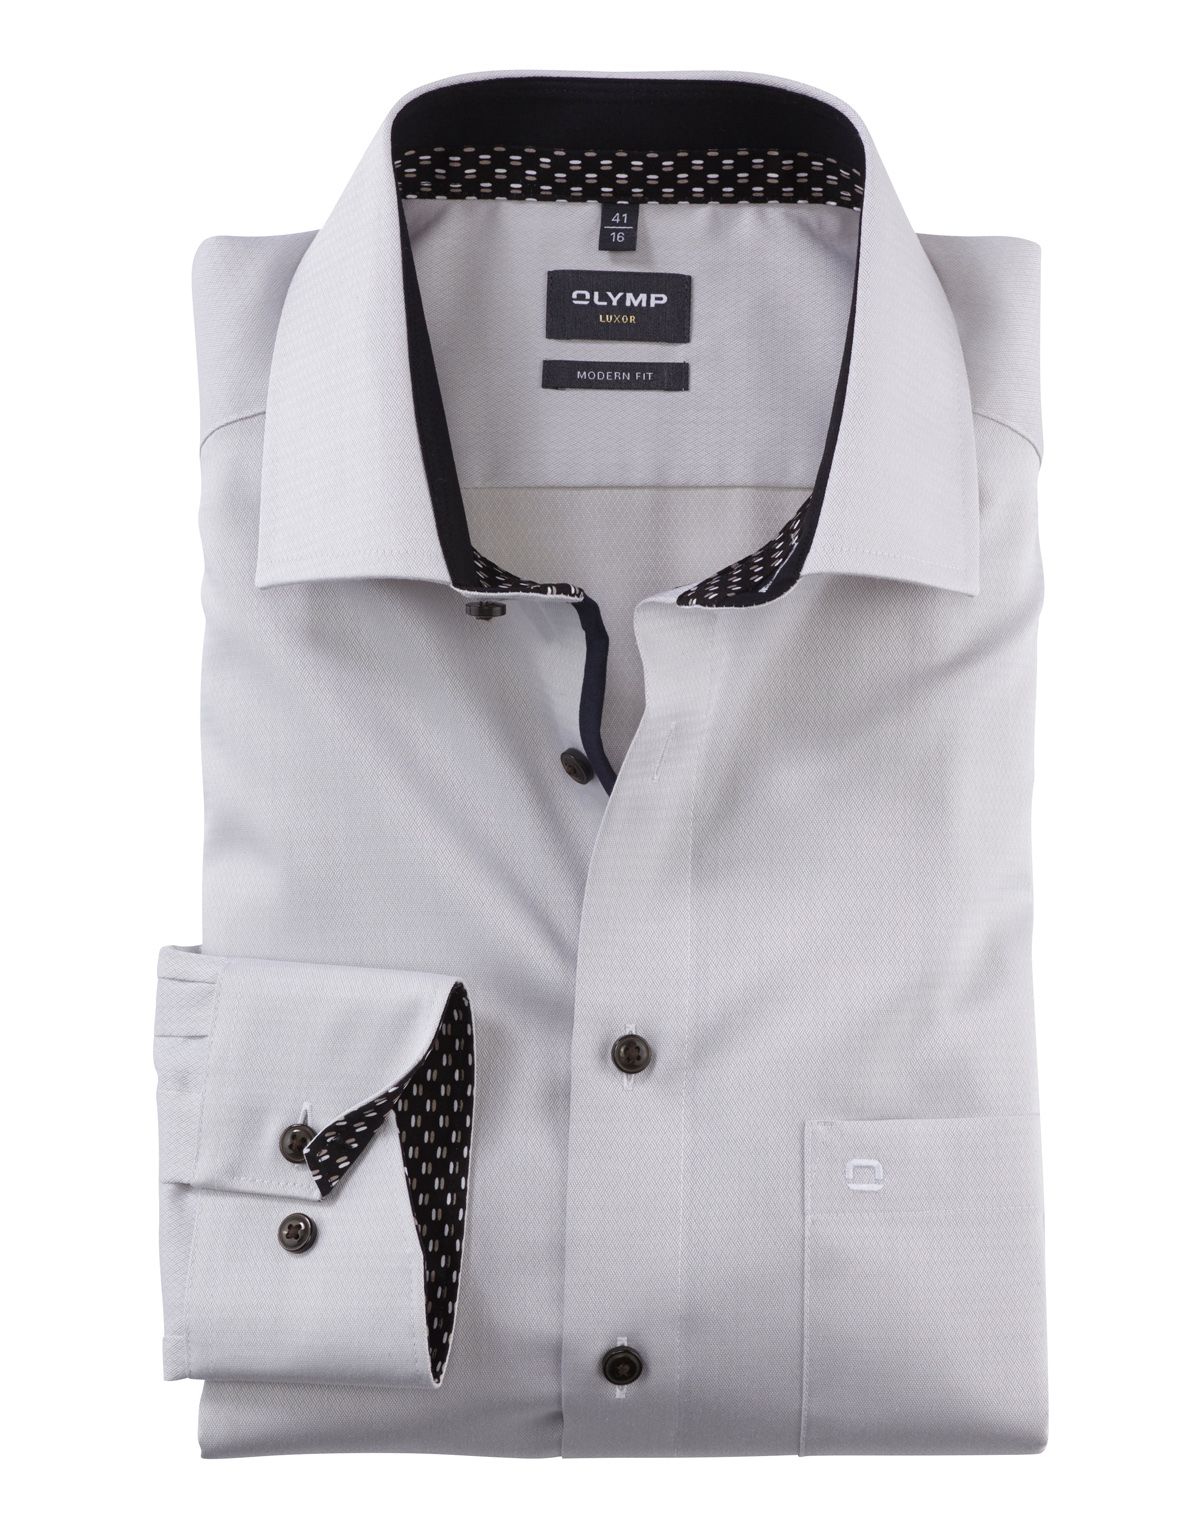 Рубашка мужская OLYMP Luxor, modern fit, фактурная ткань